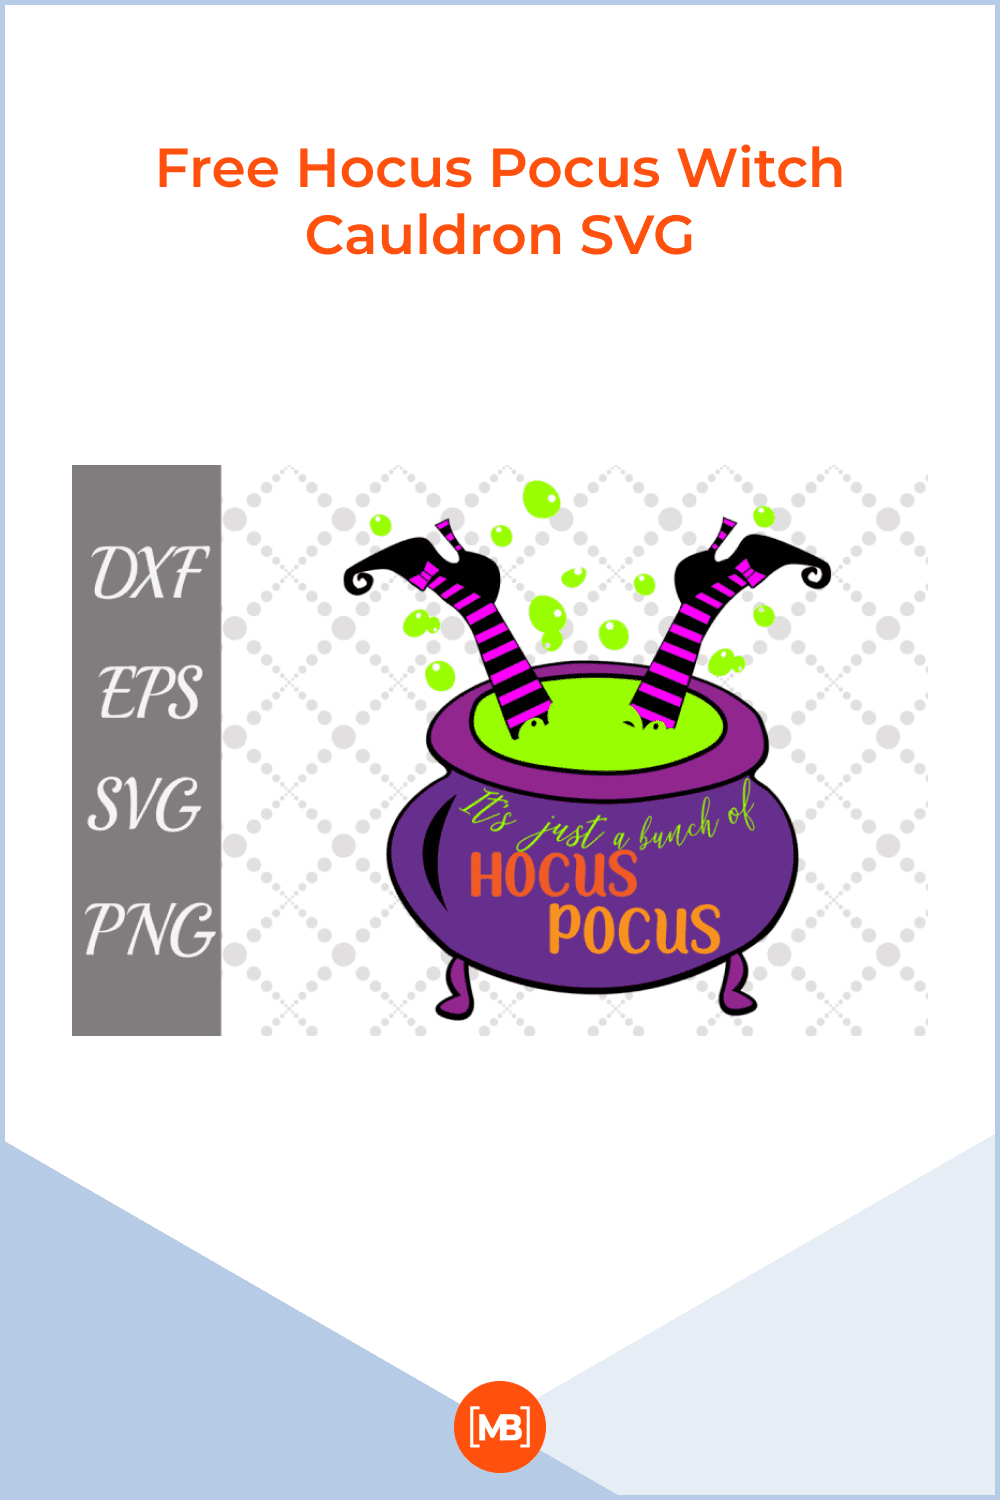 Free Hocus Pocus Witch Cauldron SVG.